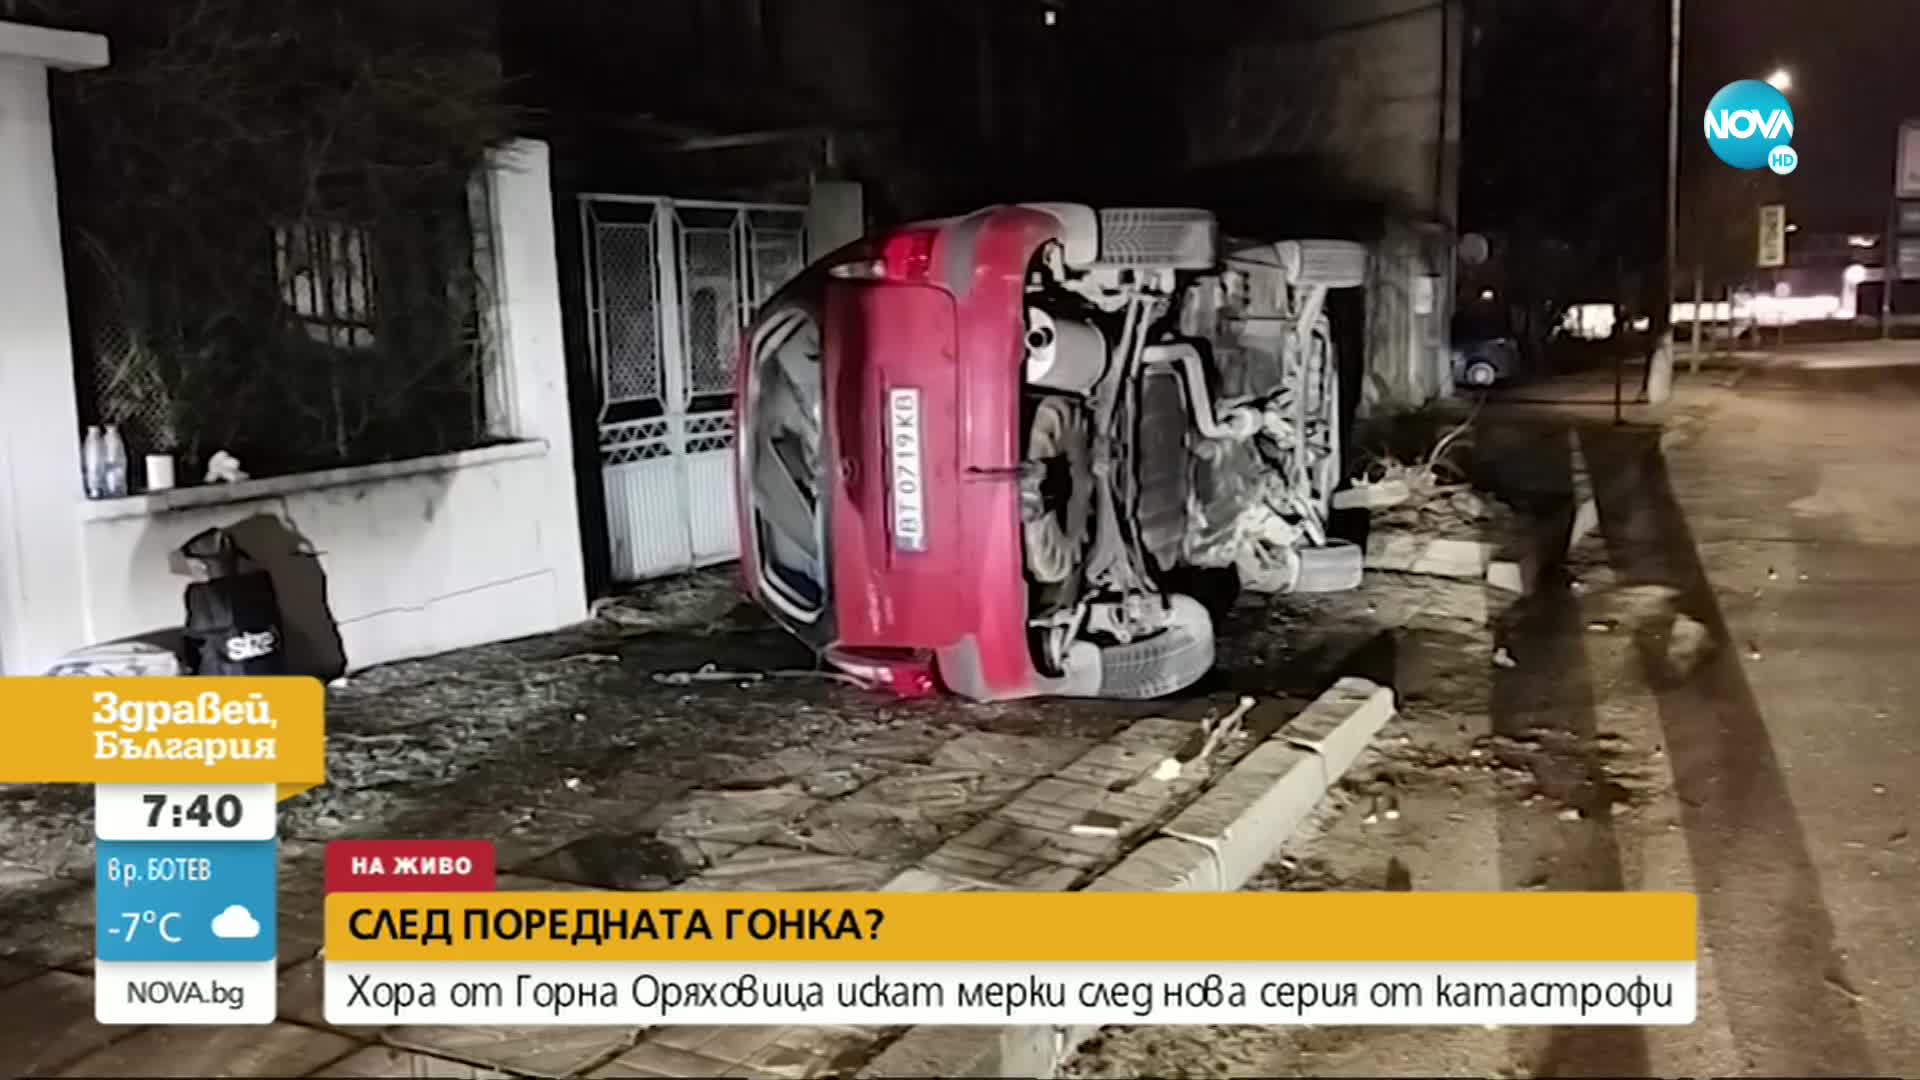 СЛЕД ГОНКА?: Хора от Горна Оряховица искат мерки след нова серия от катастрофи